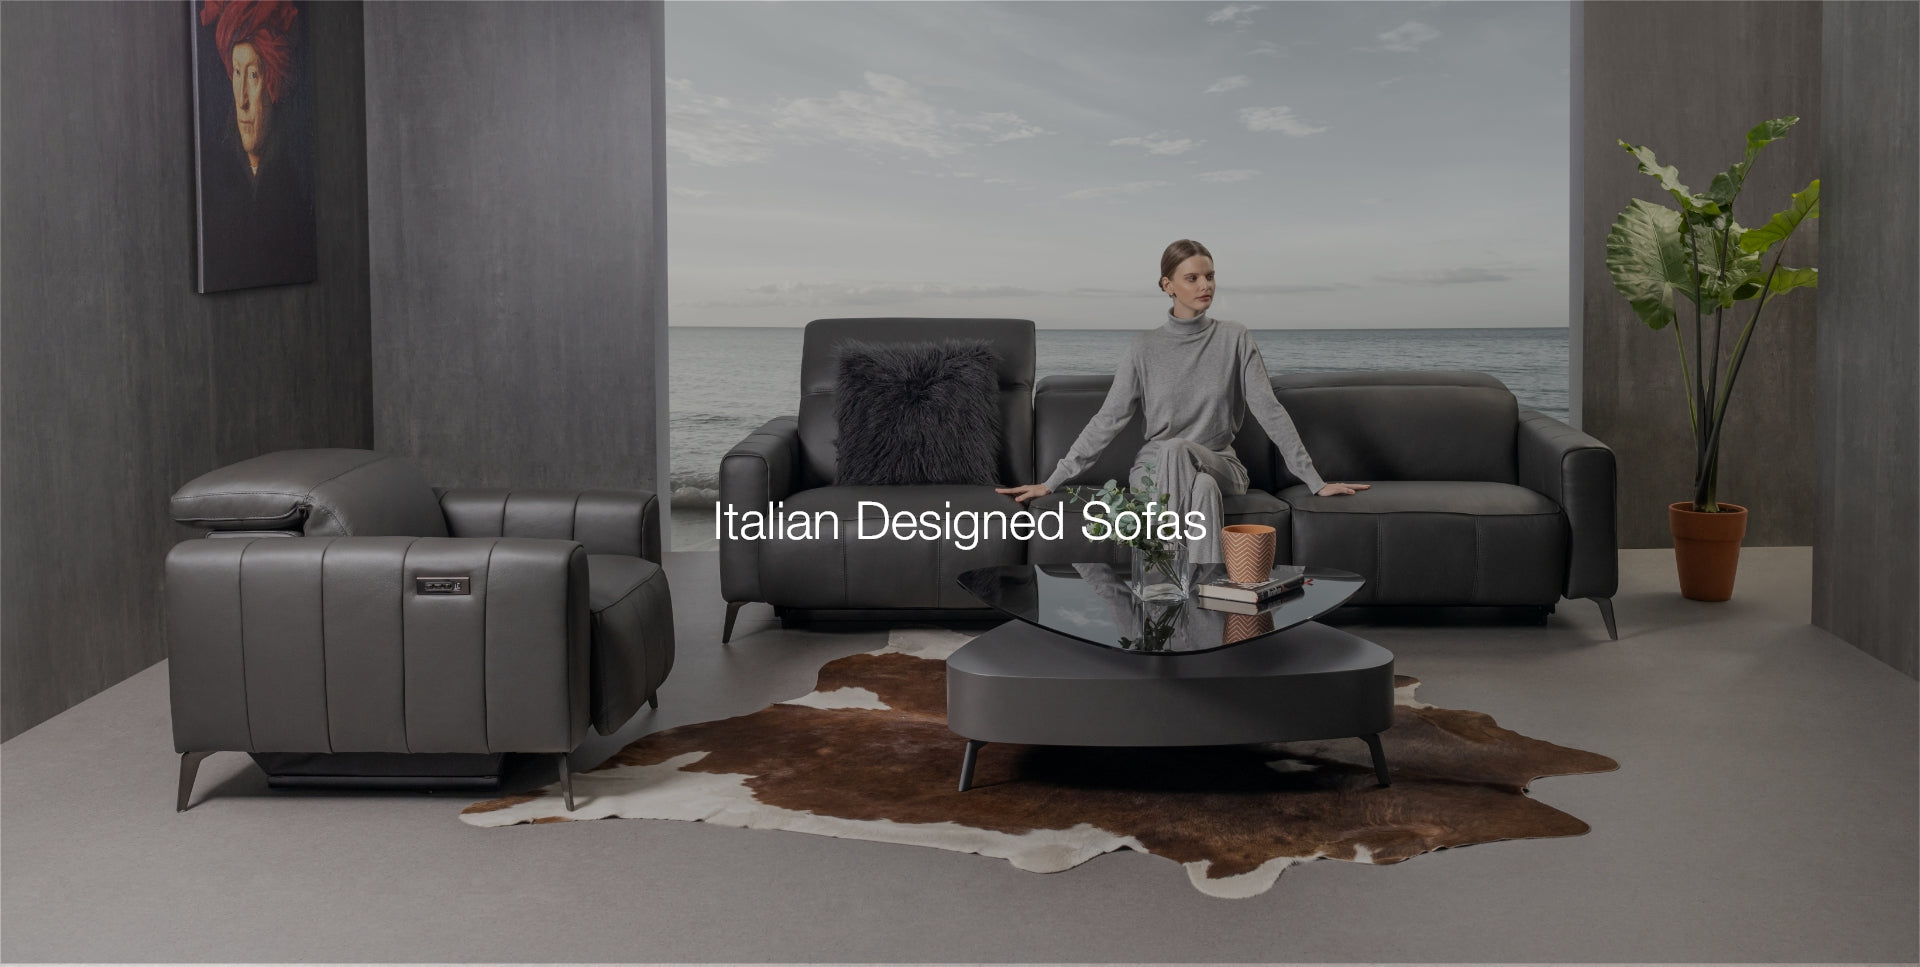 Italian Designed Sofas